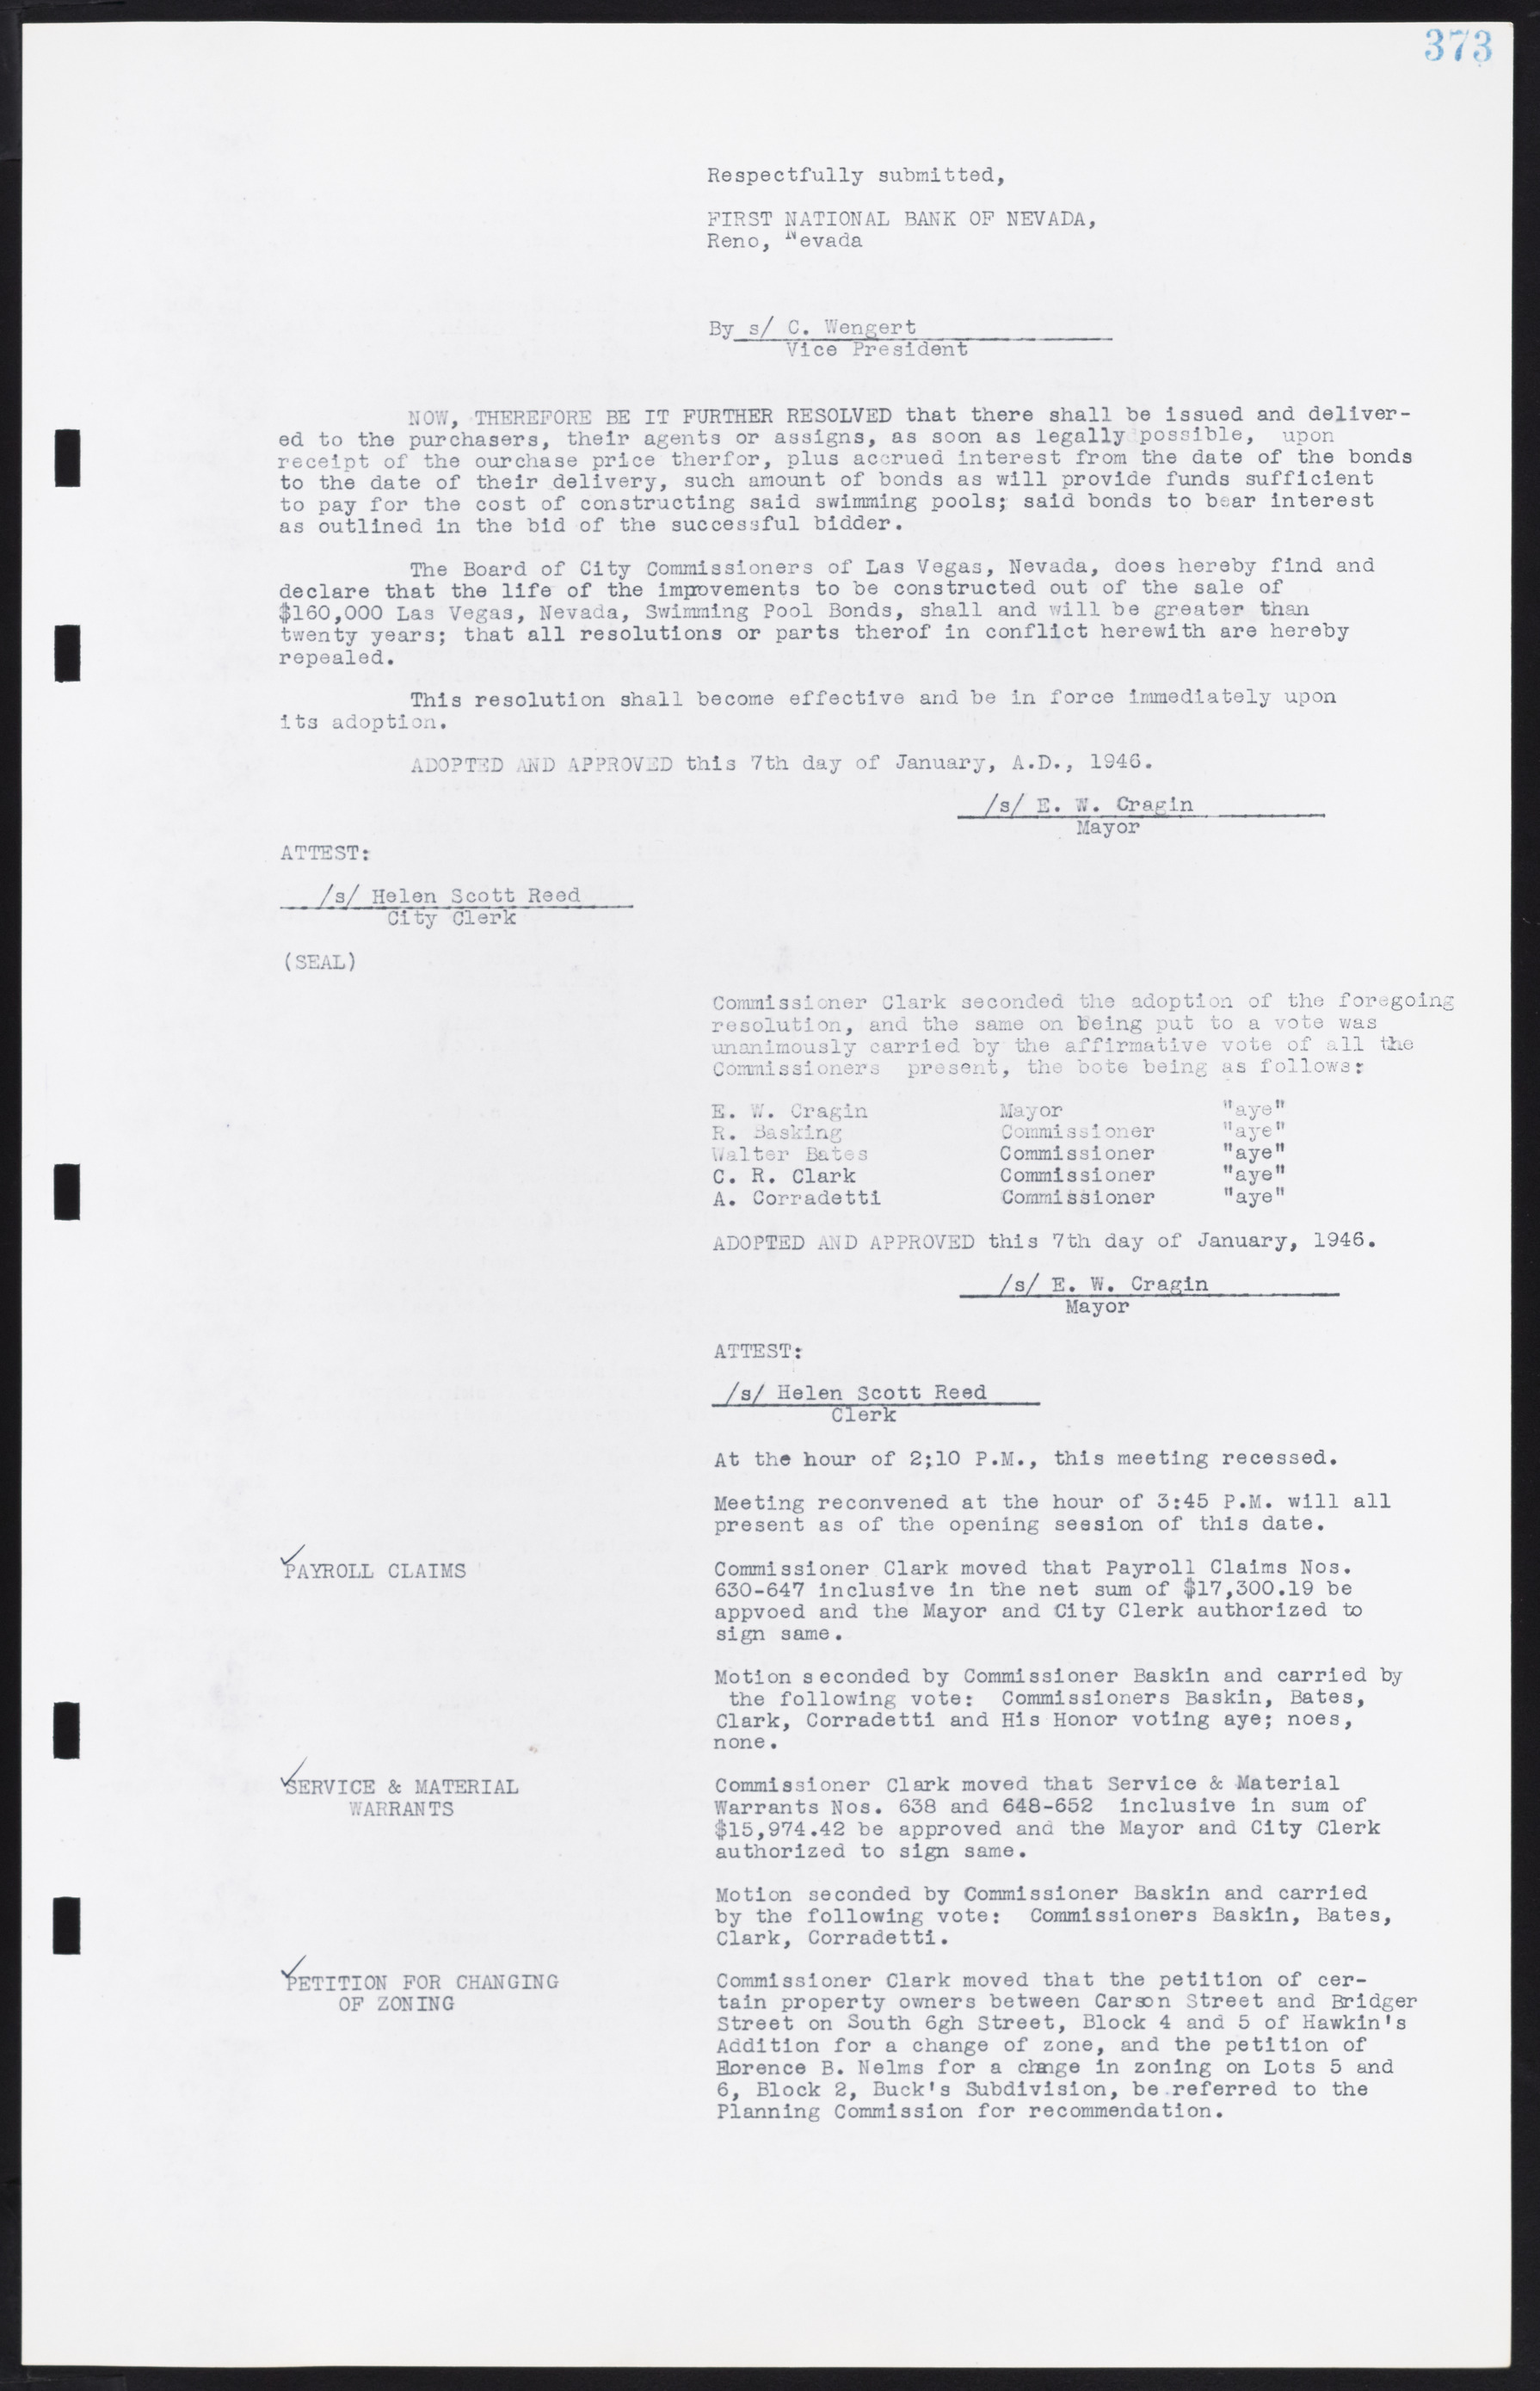 Las Vegas City Commission Minutes, August 11, 1942 to December 30, 1946, lvc000005-400